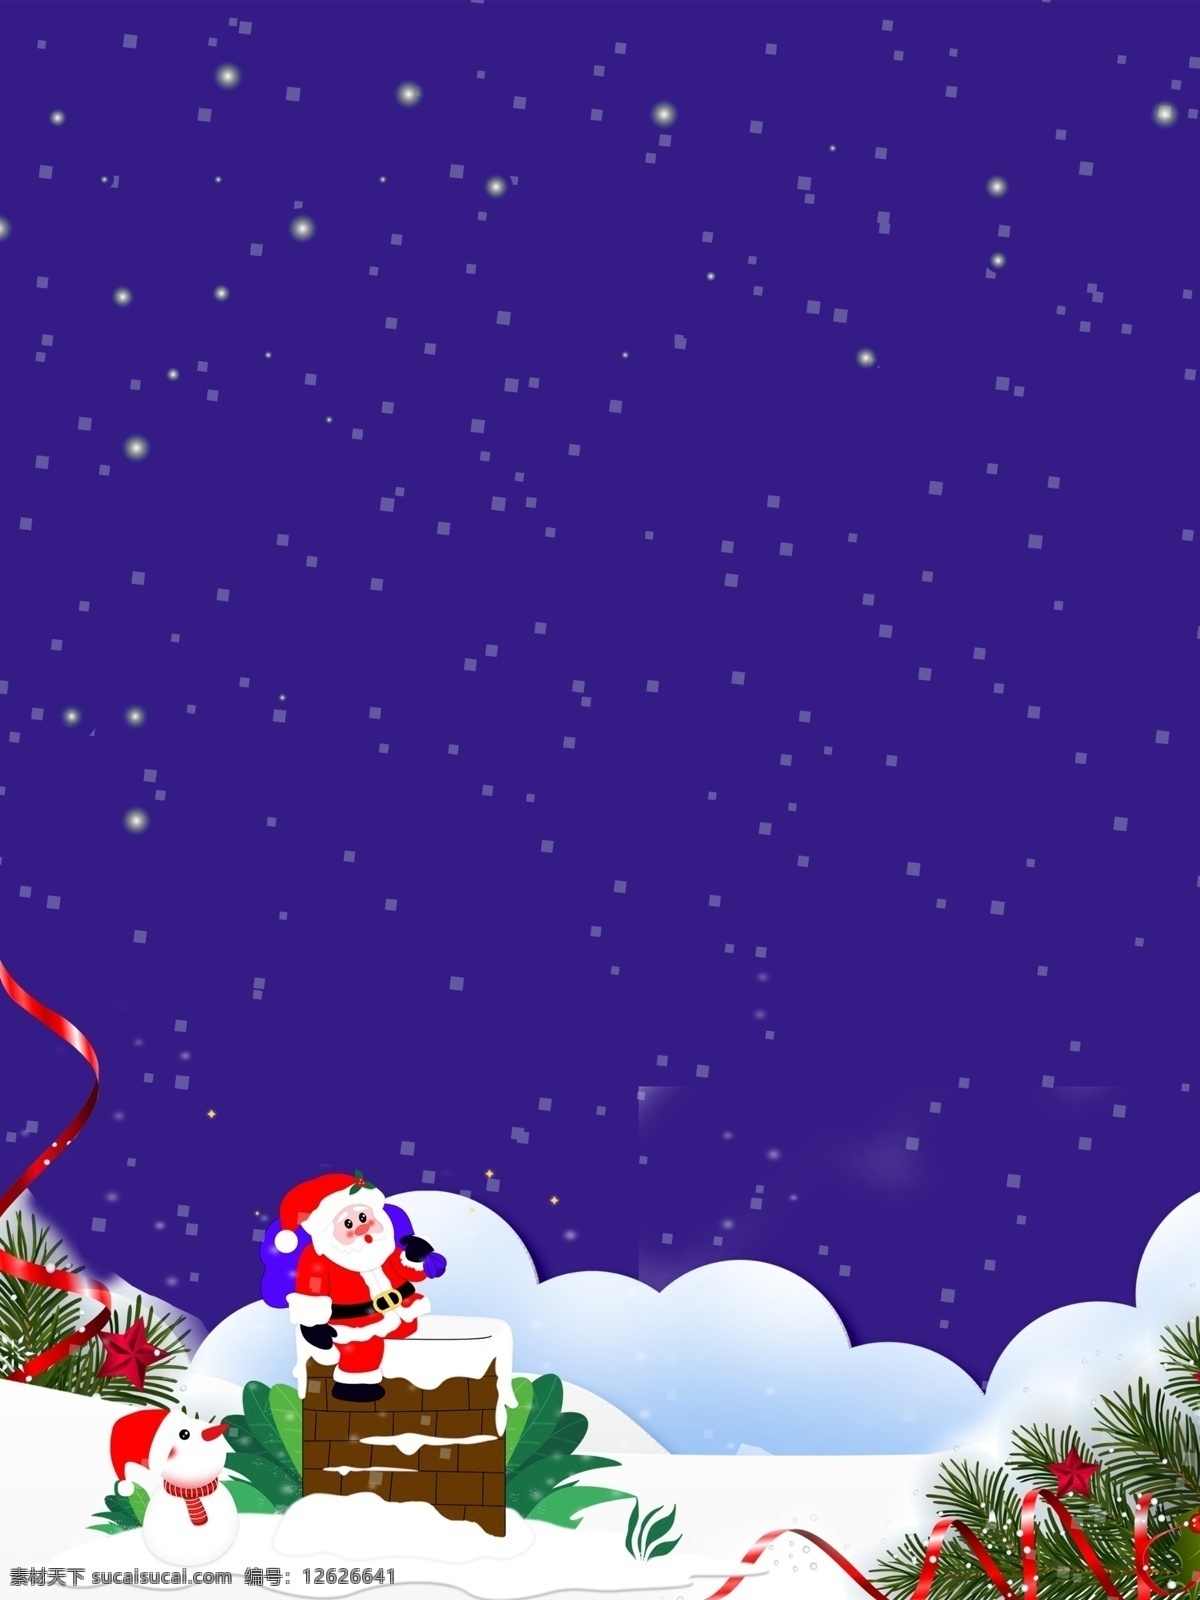 紫色 唯美 圣诞节 卡通 背景 图 雪花 浪漫 唯美背景 卡通背景 圣诞节背景 圣诞背景 手绘背景 雪地 圣诞老人 圣诞素材